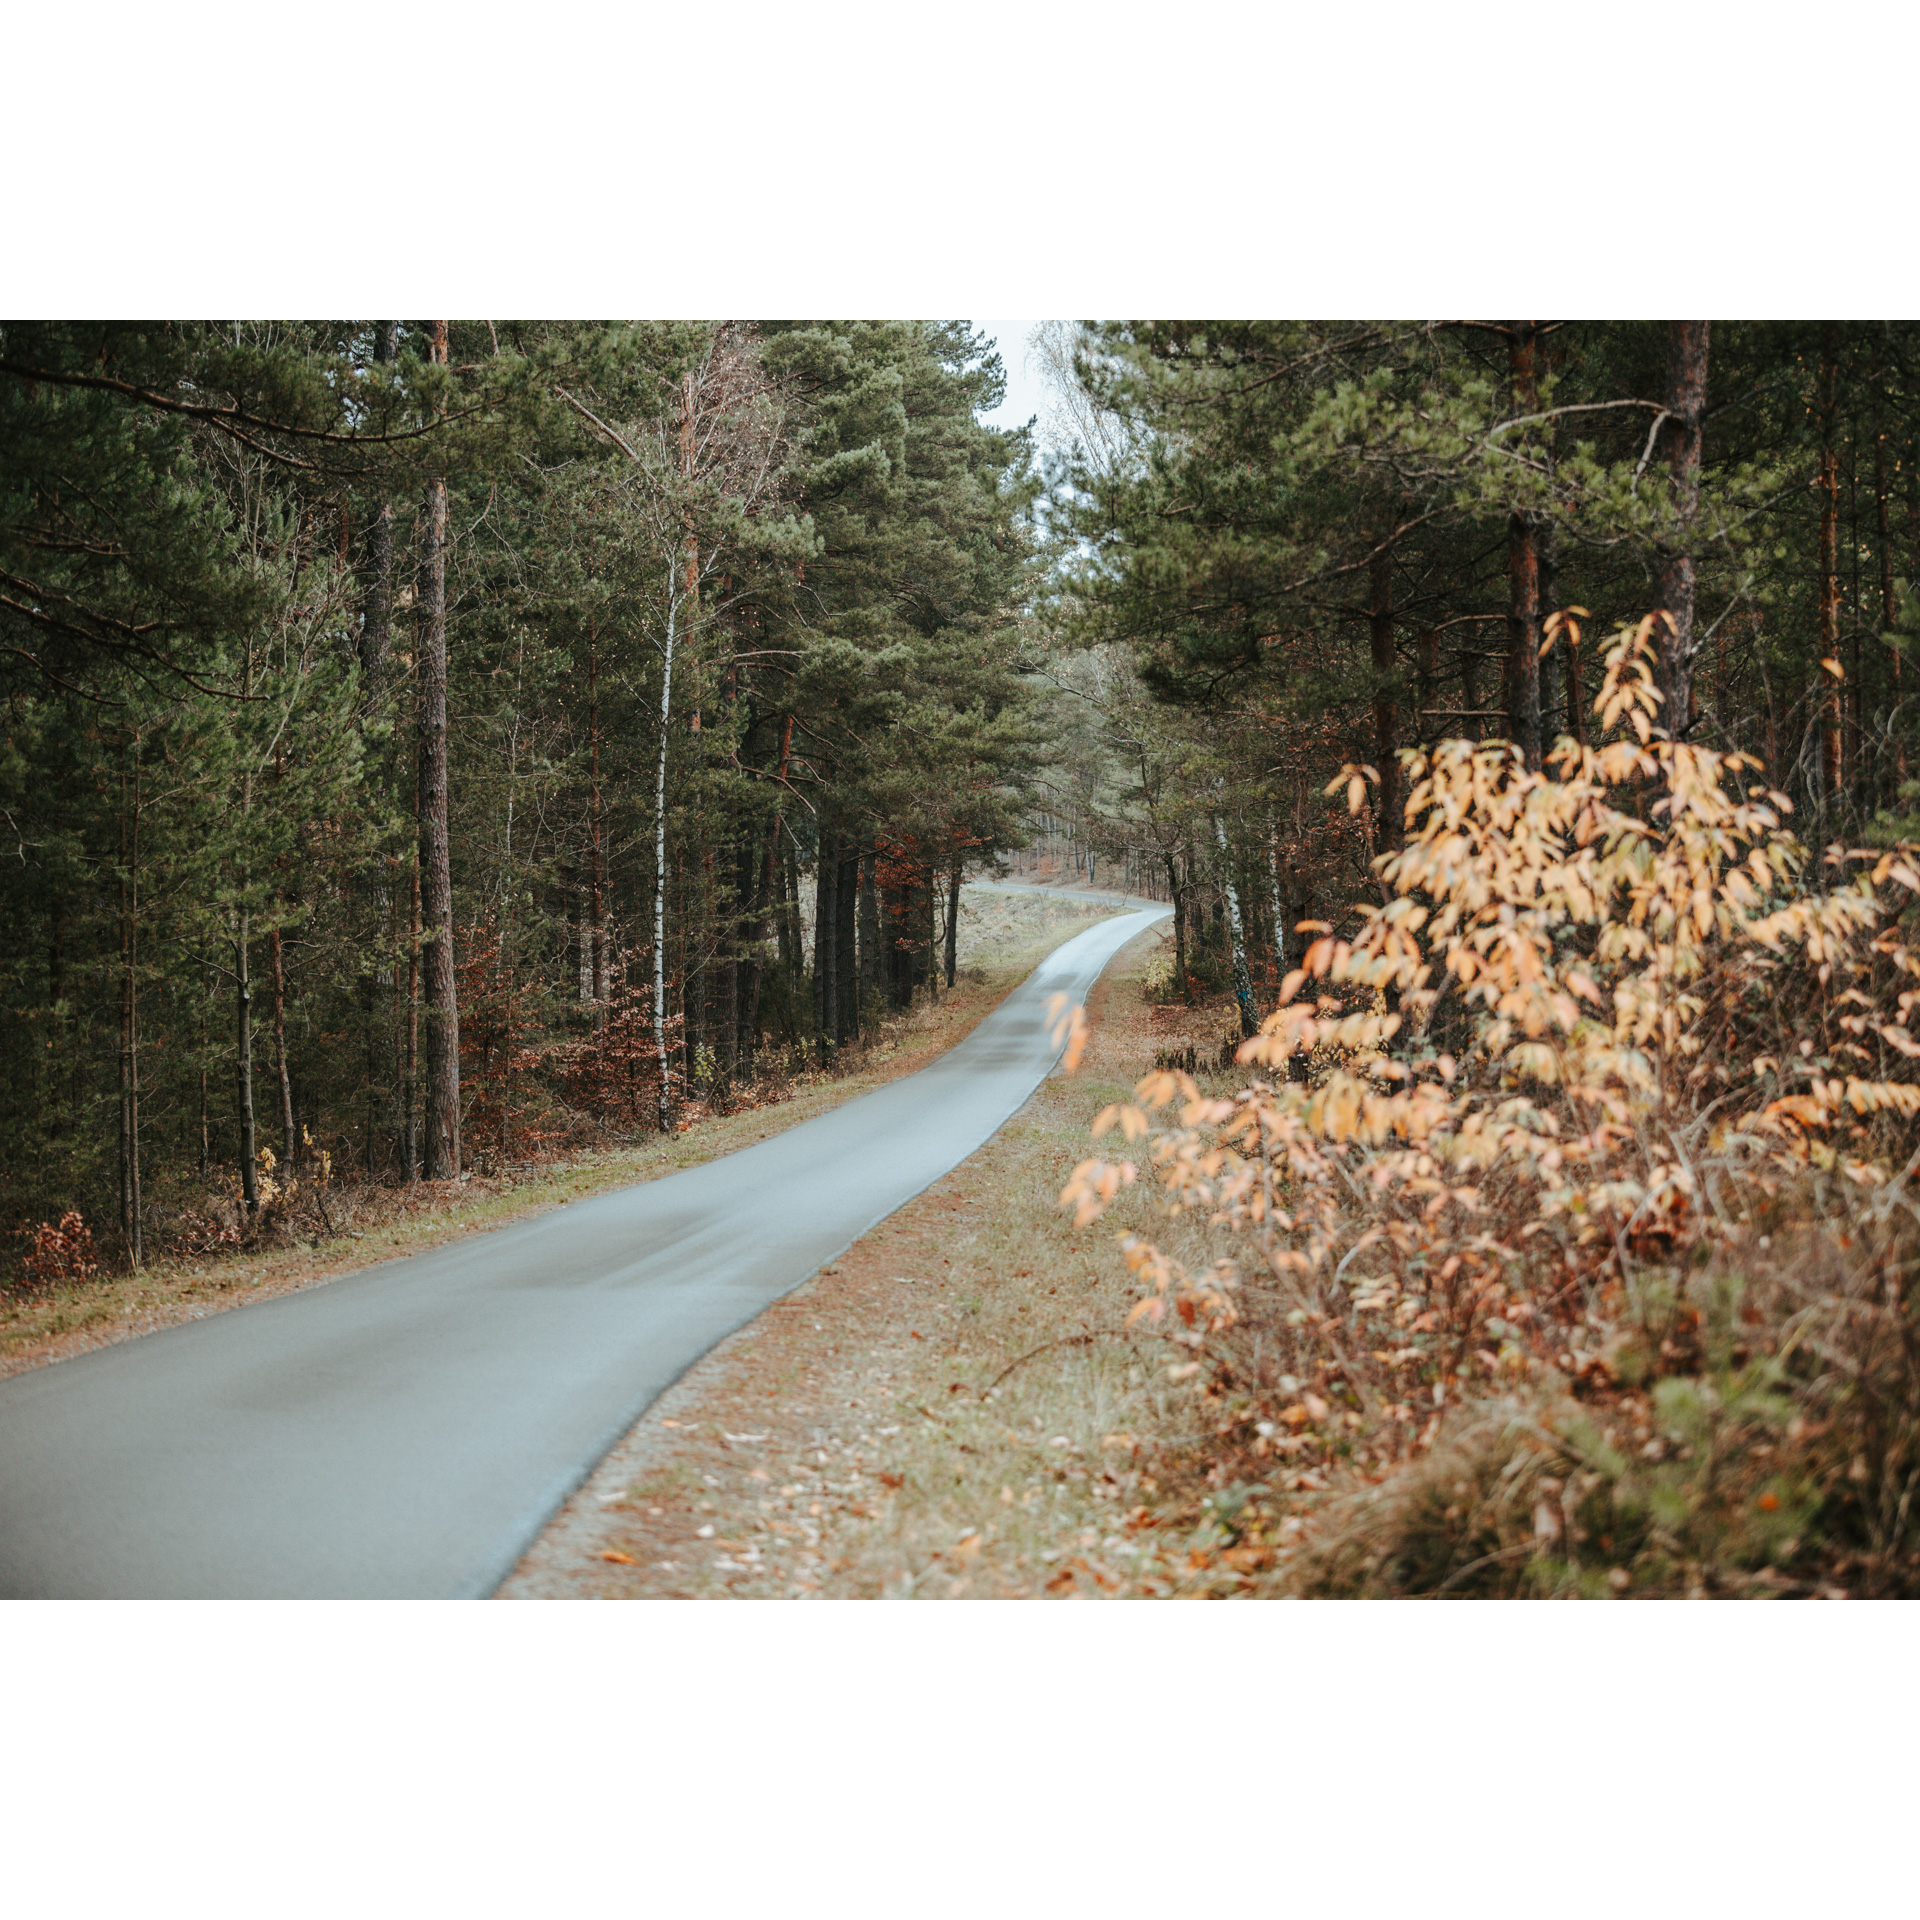 Droga asfaltowa prowadząca przez las